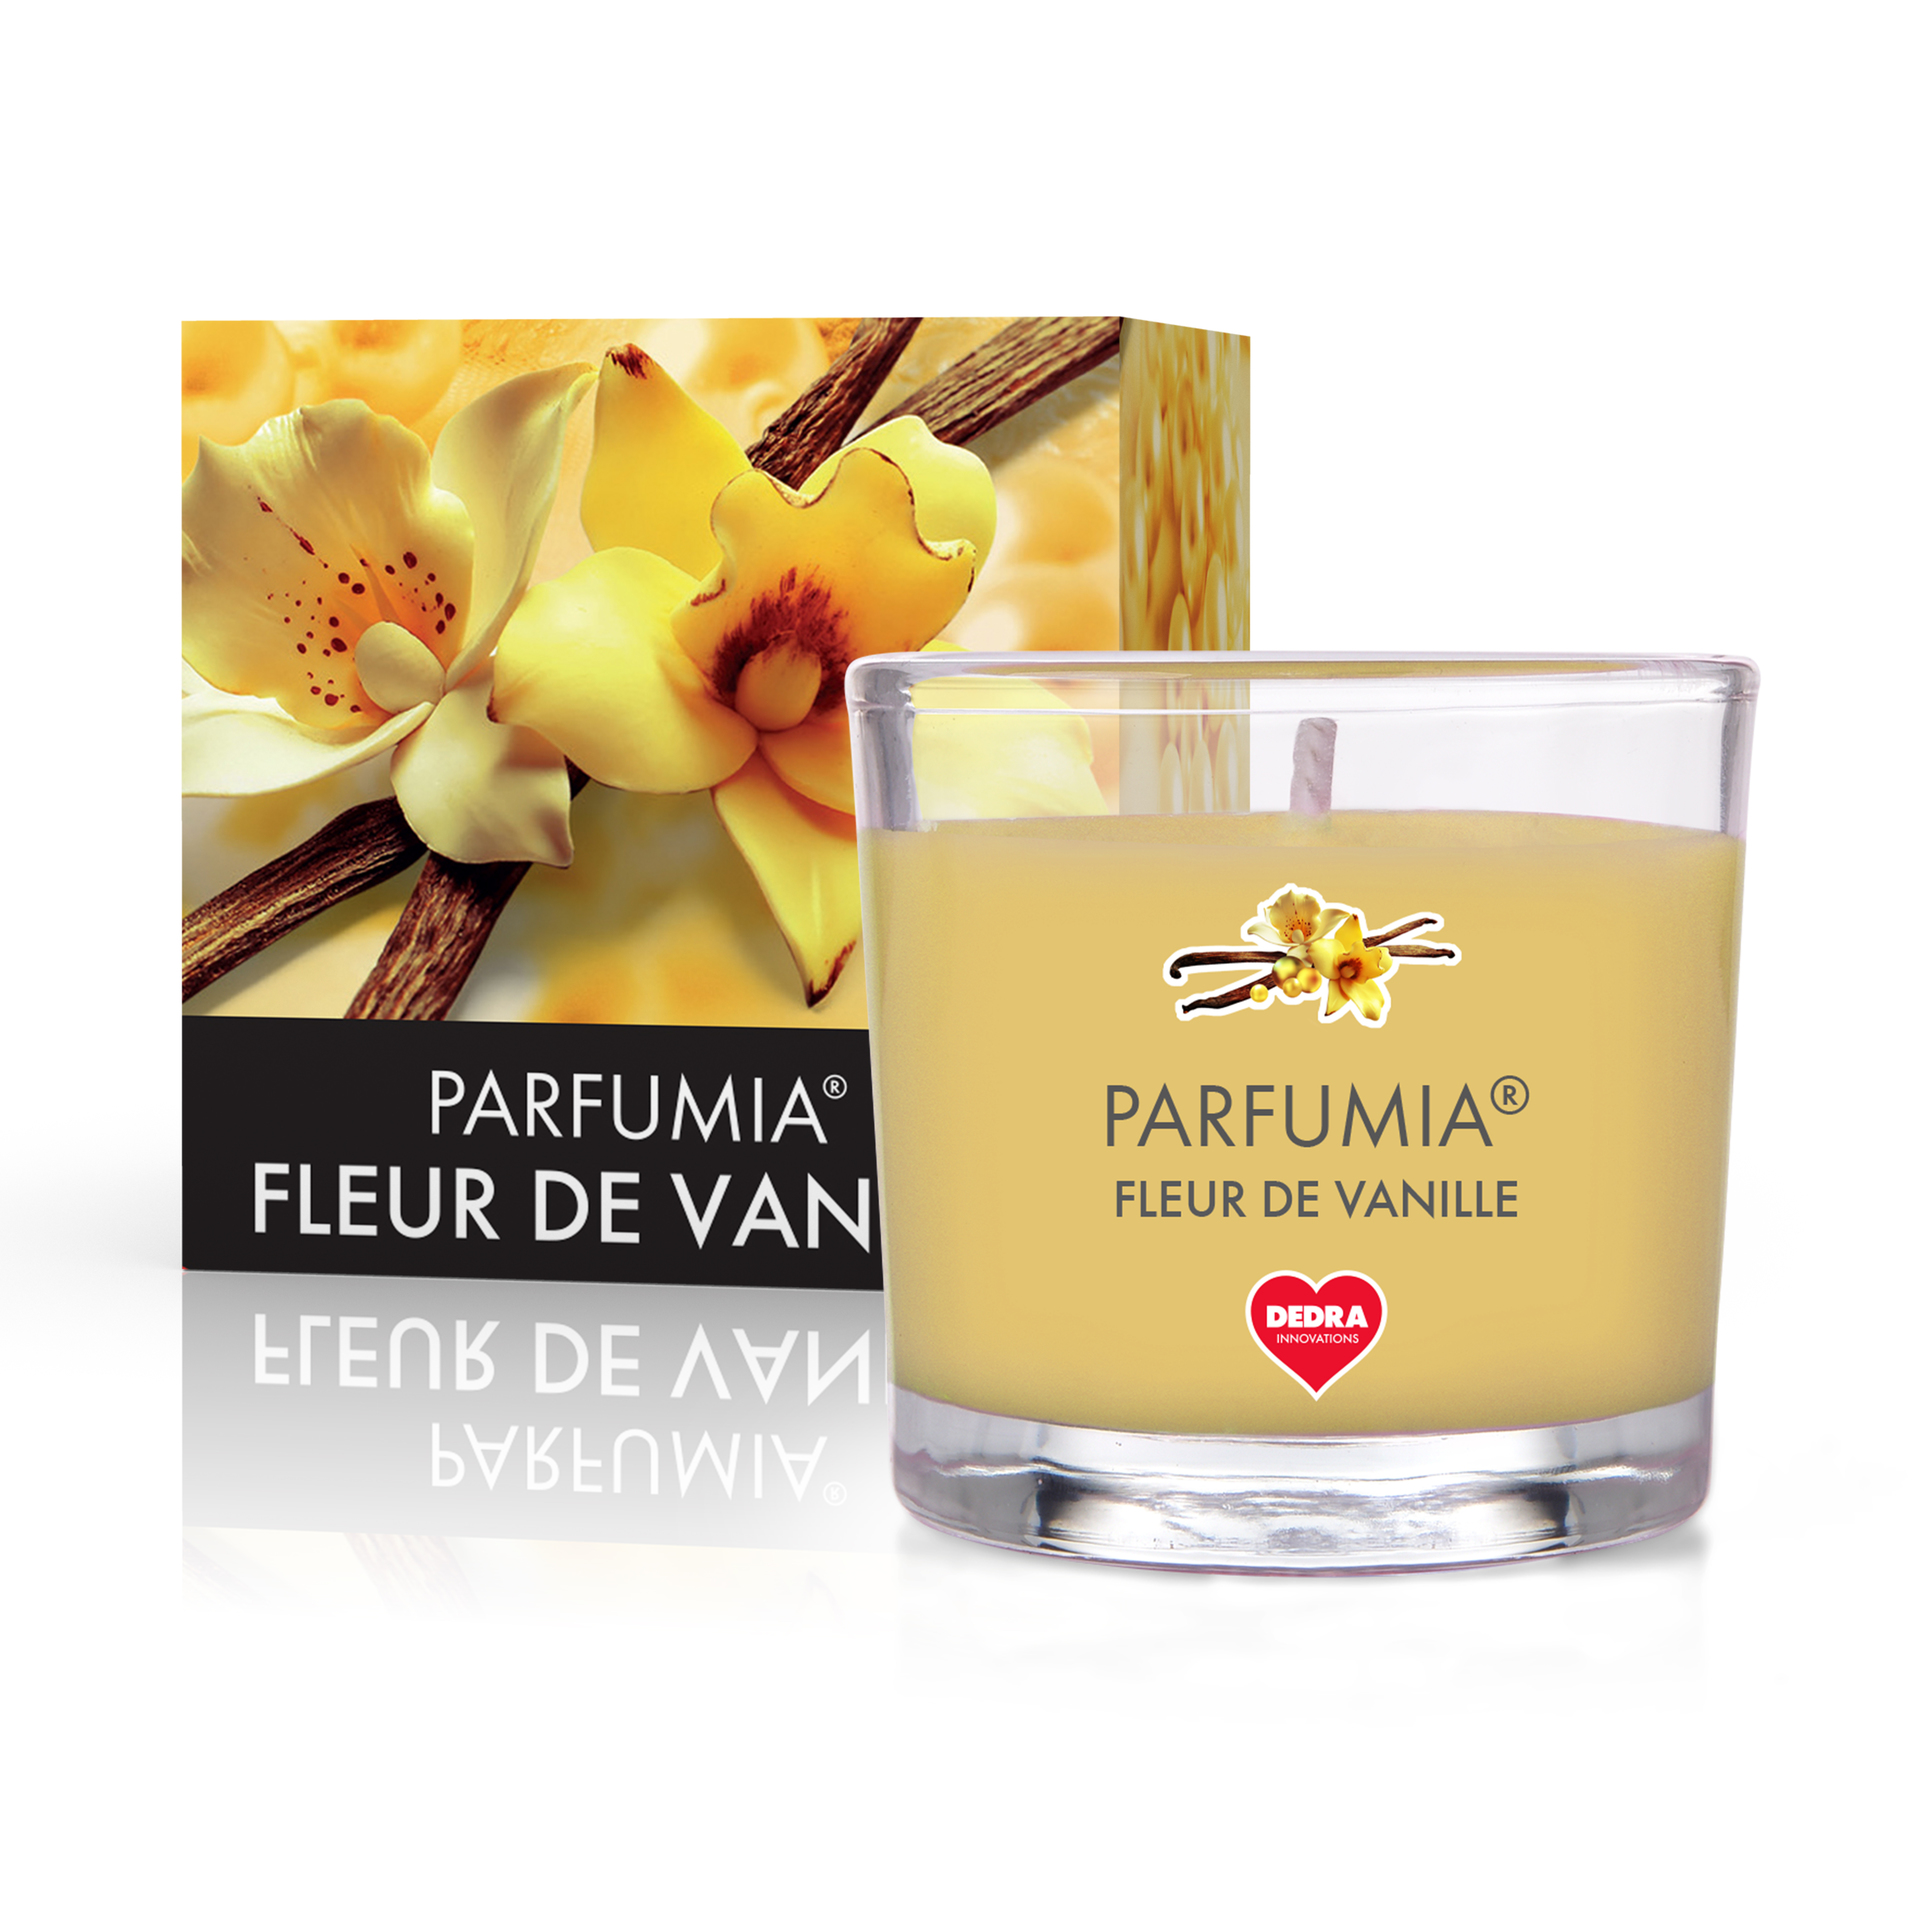 55 ml votivní sójová eko-svíce, Fleur de vanille, Parfumia